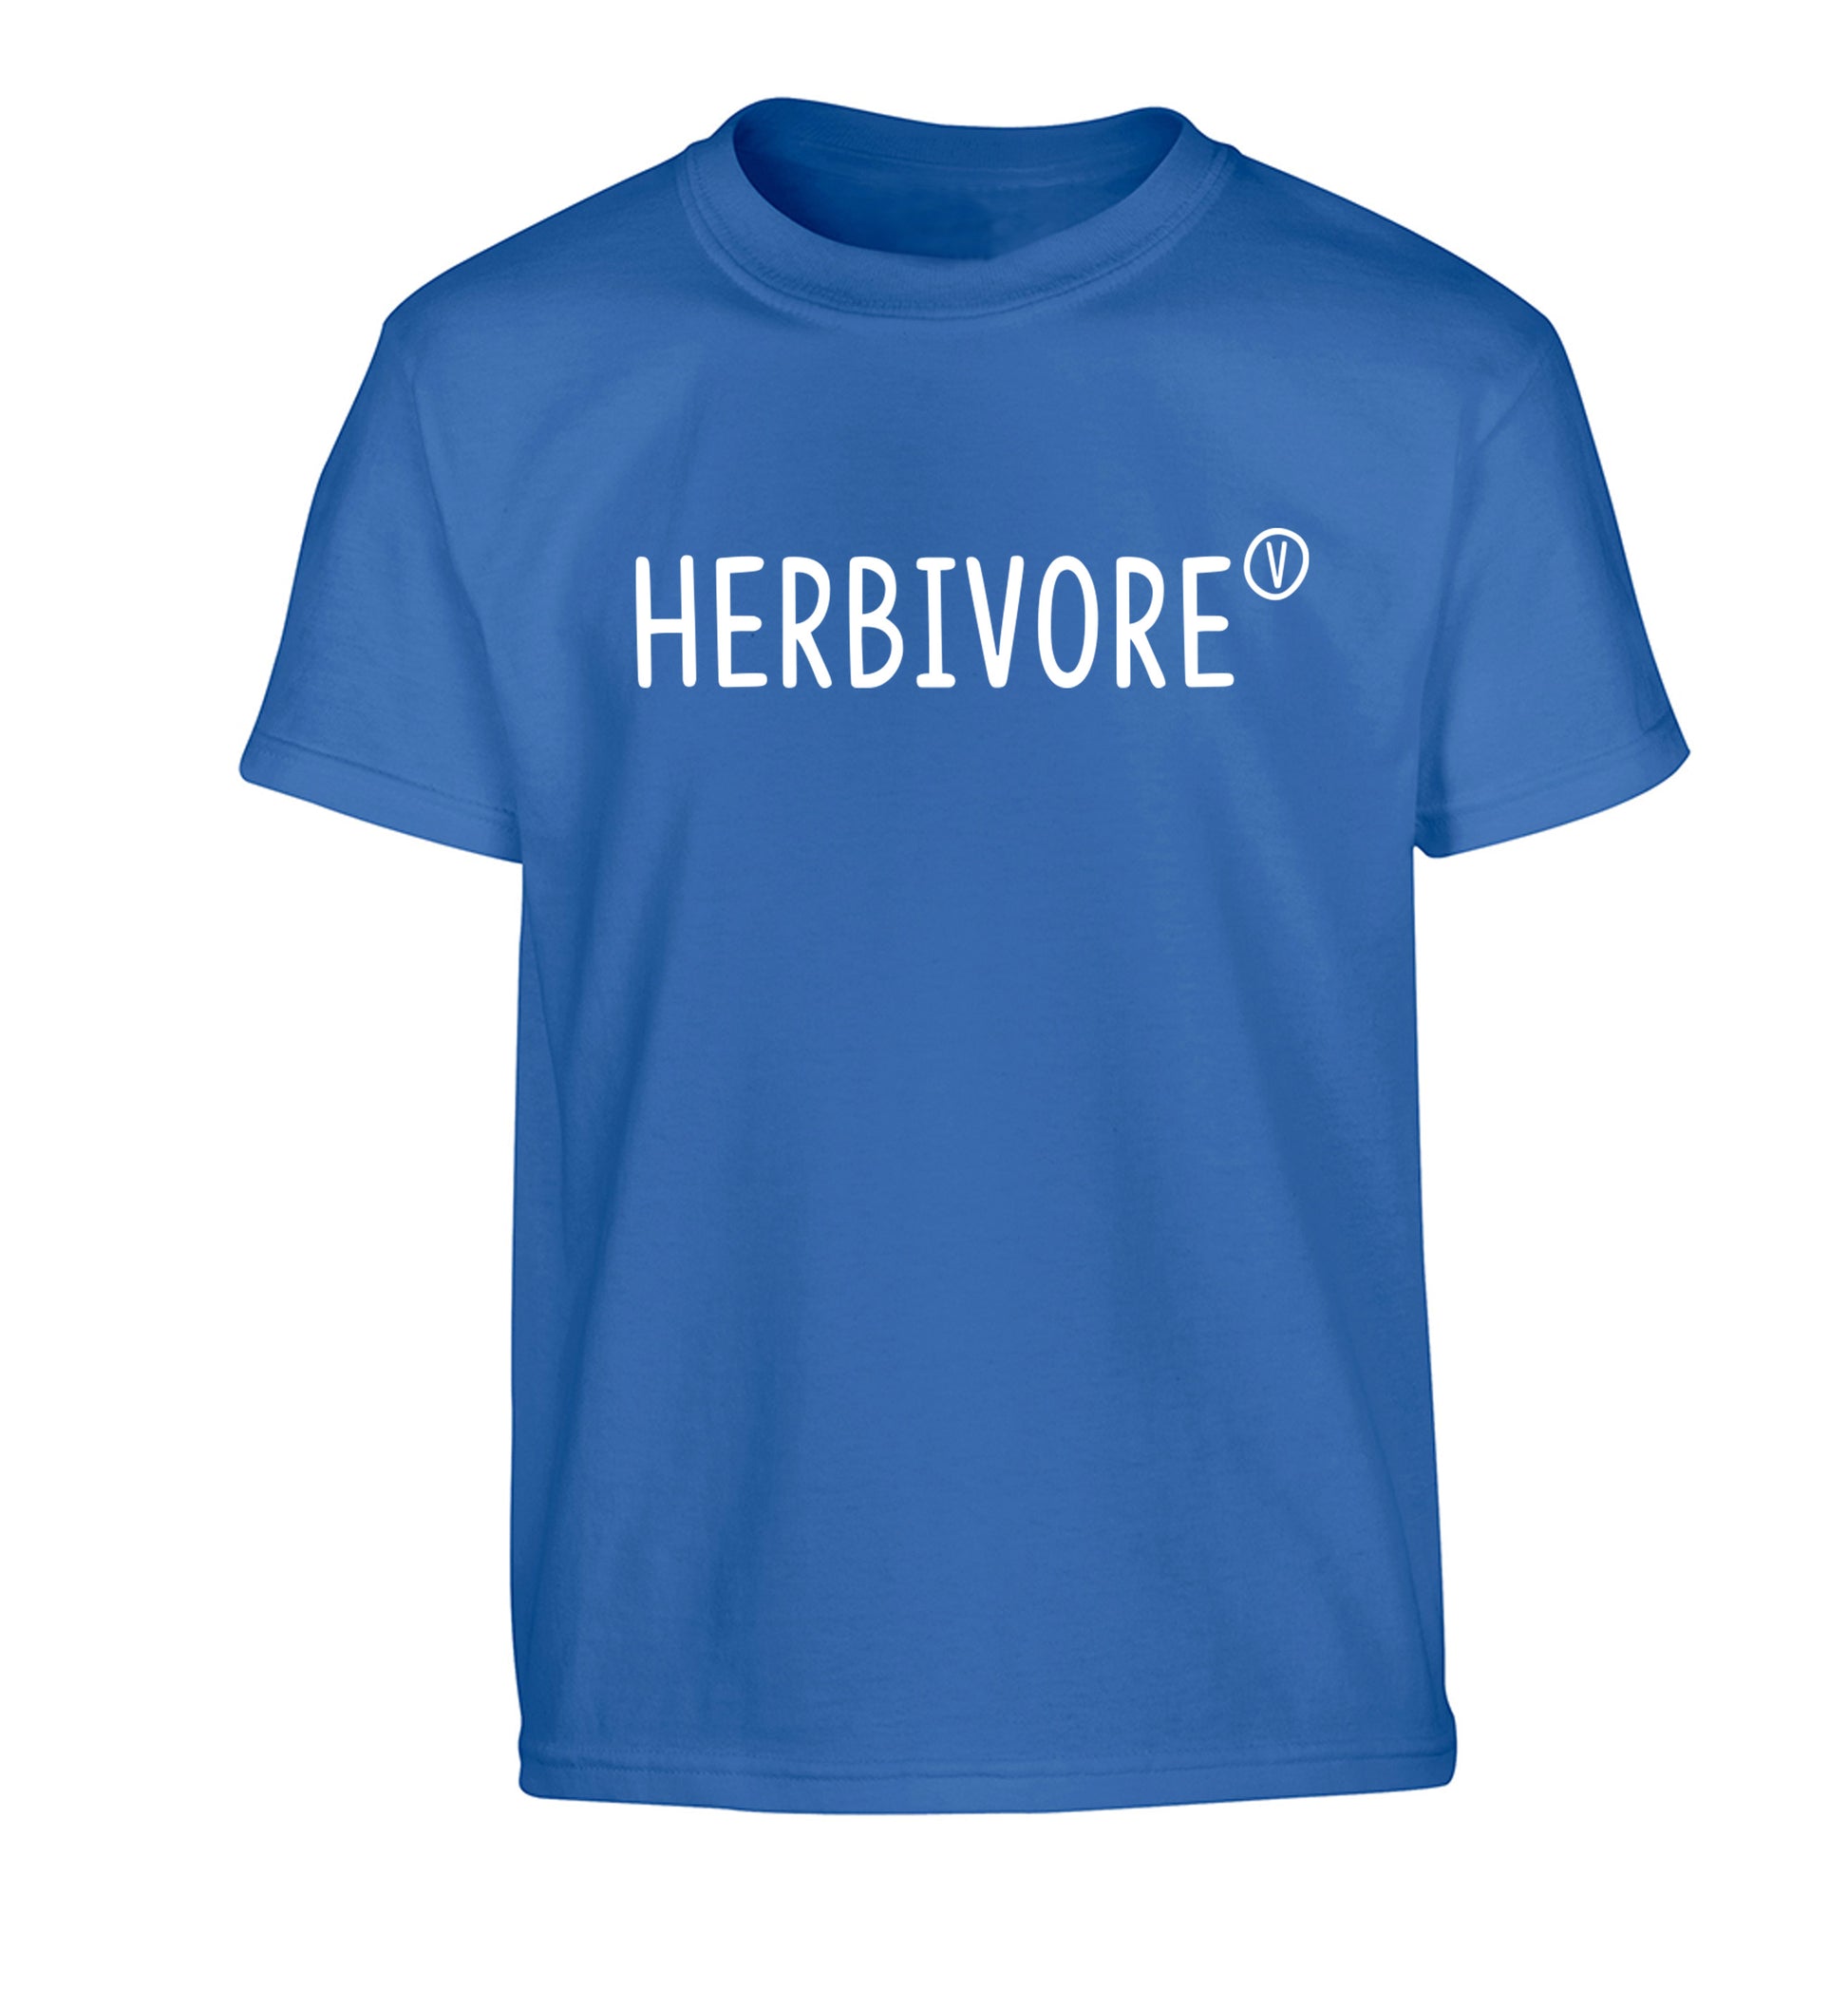 Herbivore Children's blue Tshirt 12-13 Years